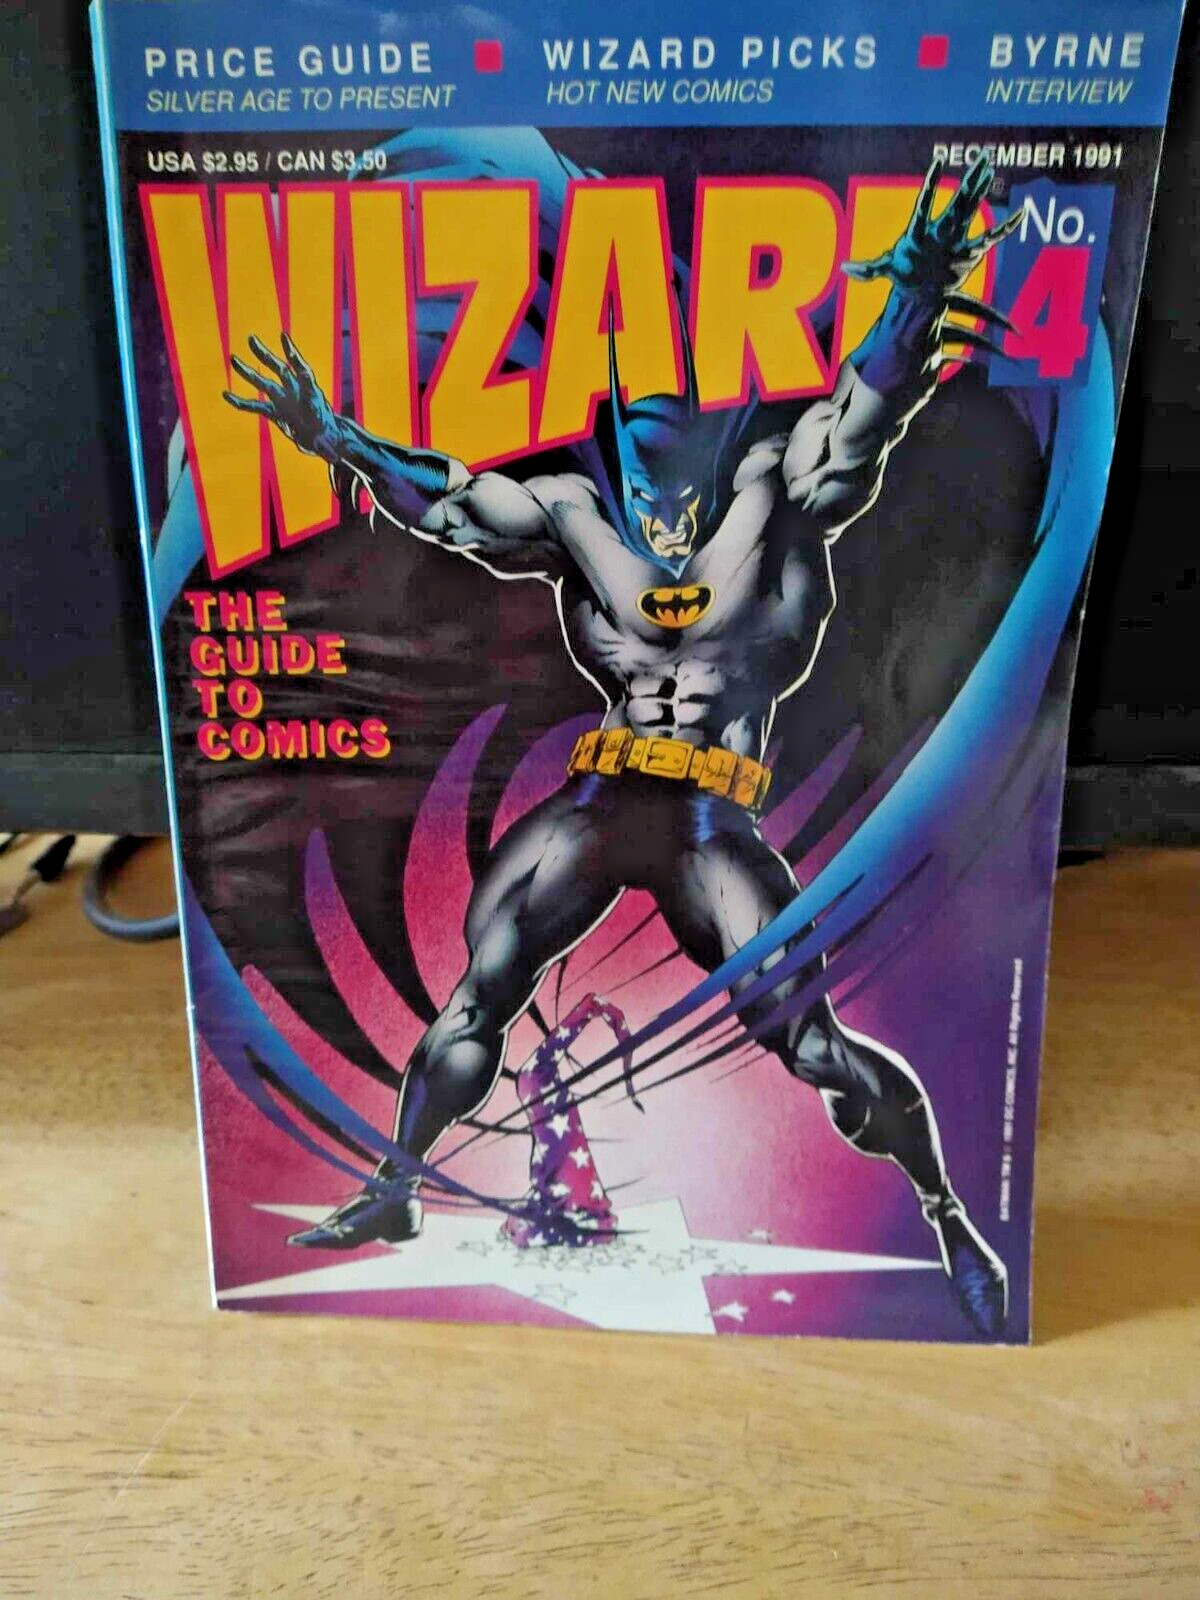 December 1991 Wizard Magazine #4 Batman Wolverine poster still attached